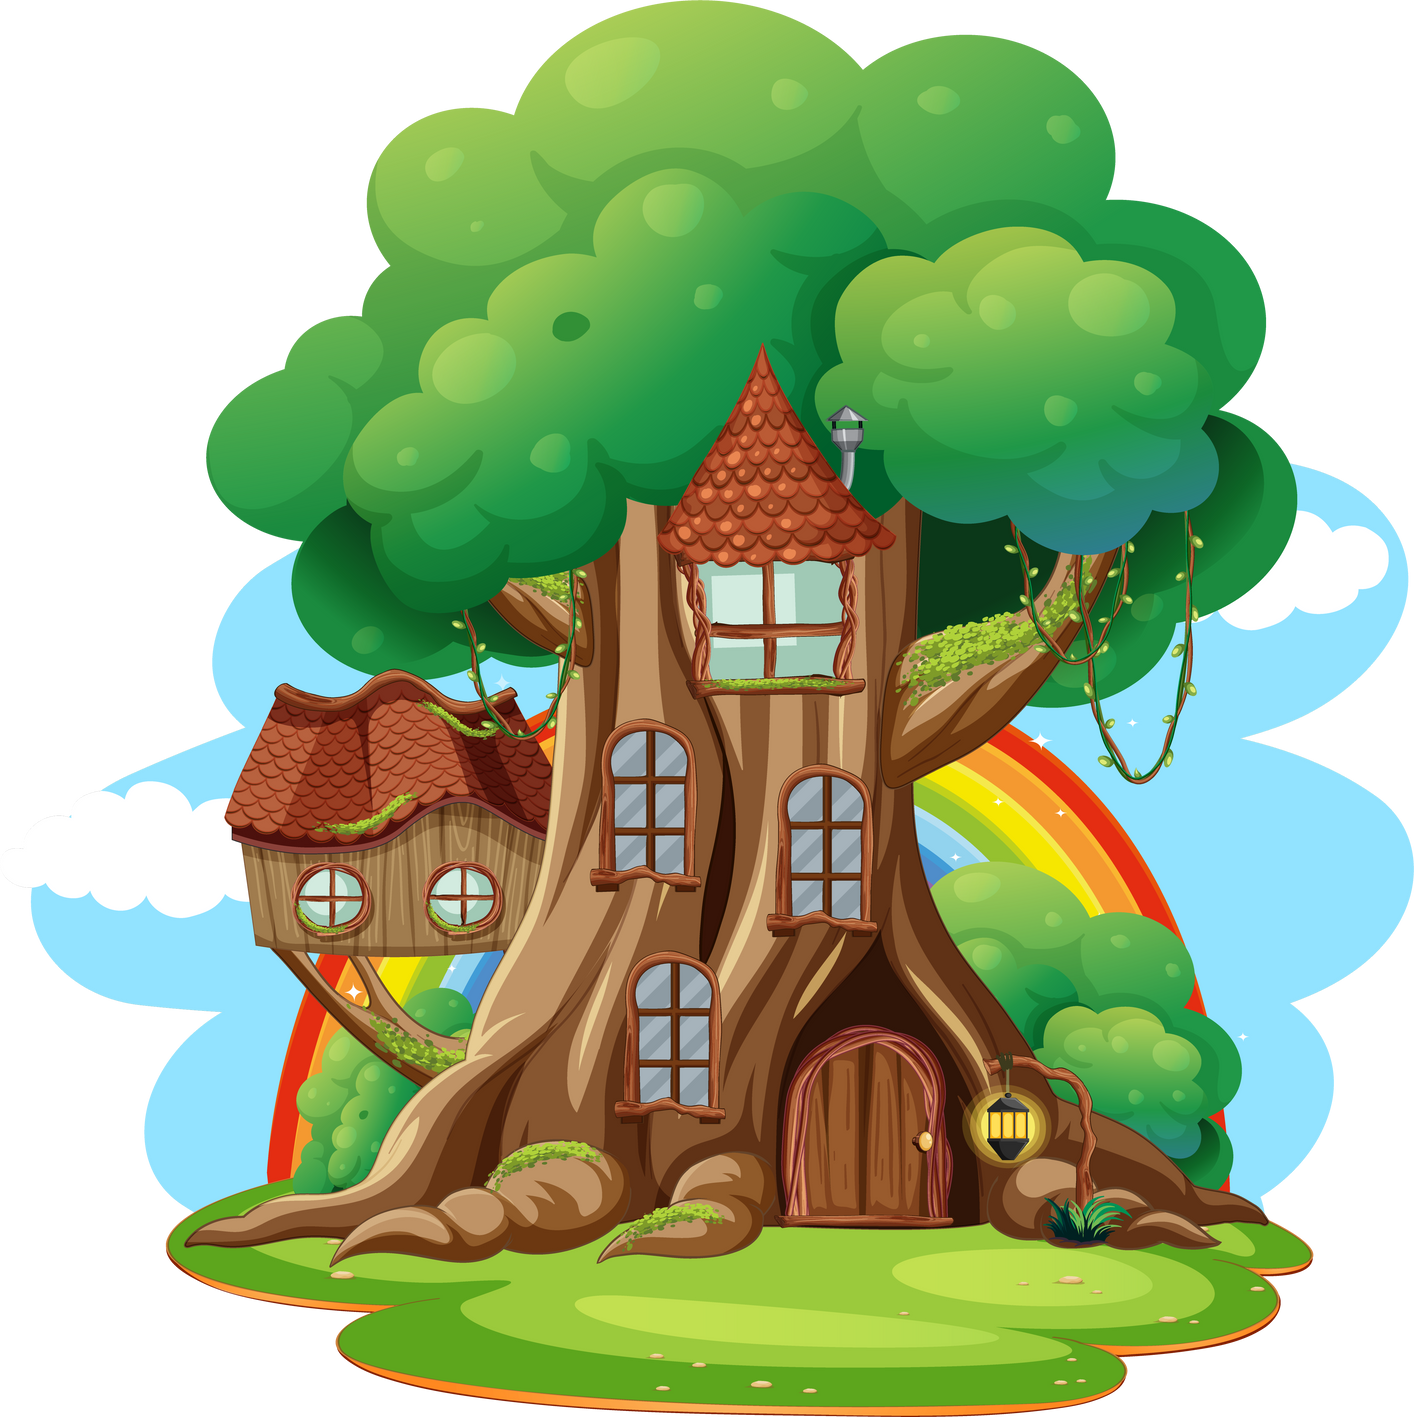 Fantasy tree house inside tree trunk